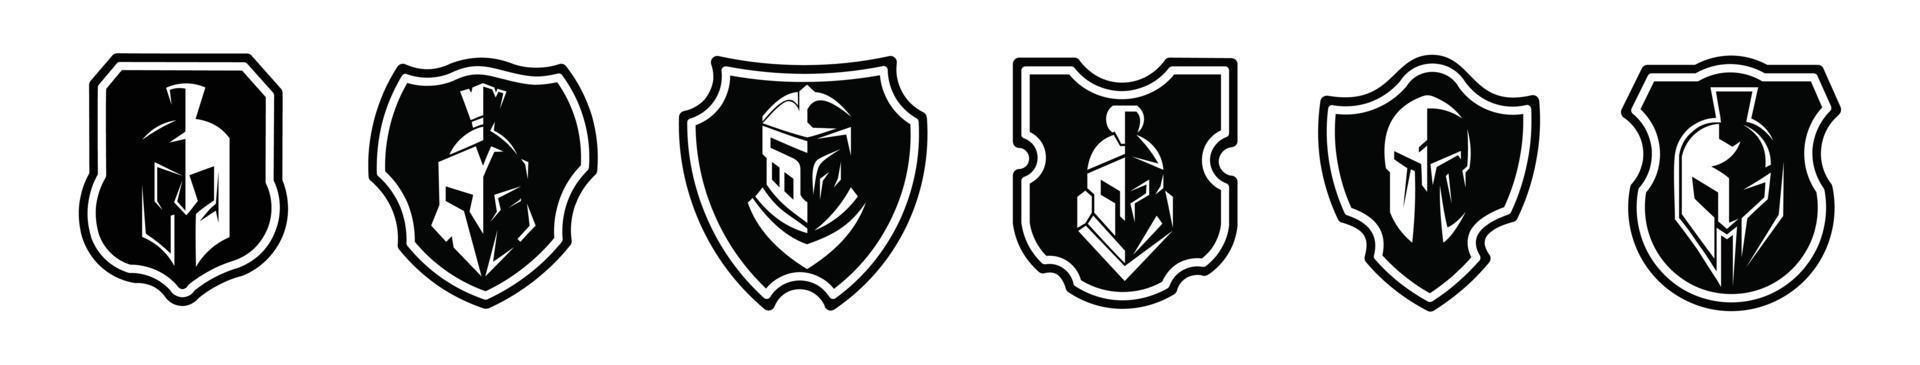 conjunto de ícones de logotipo preto de escudo espartano plano projeta ilustração vetorial em um fundo branco vetor